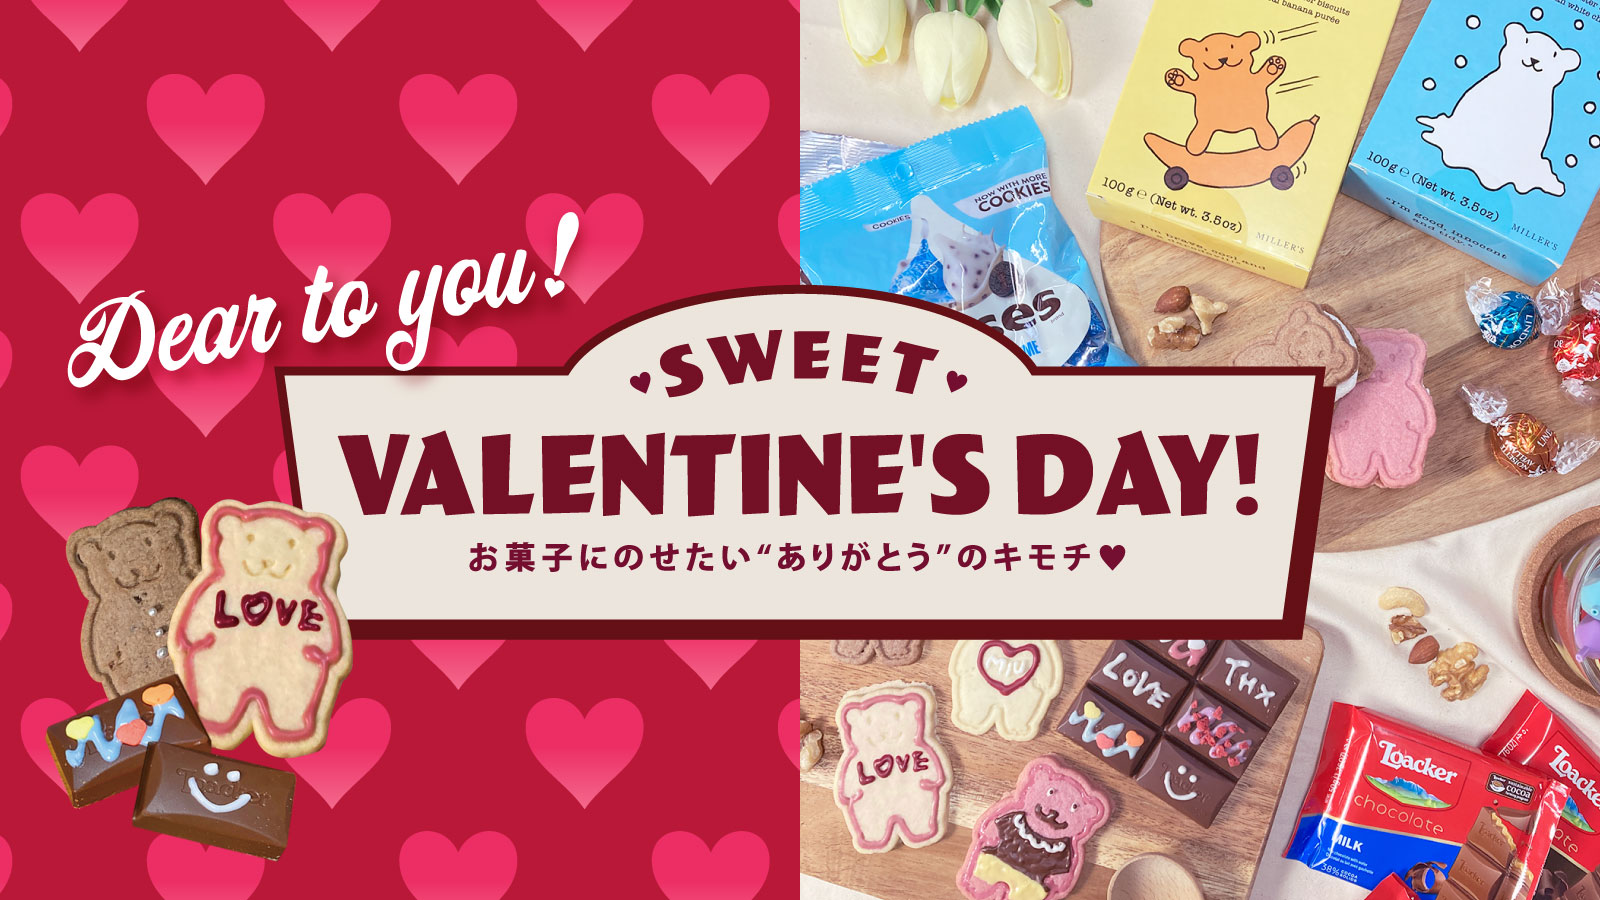 【サンキューマート】『SWEET VALENTINE’S DAY!』お菓子にのせたい”ありがとう”のキモチ🫶おすすめのバレンタインアイテムをご紹介😋🍫💝